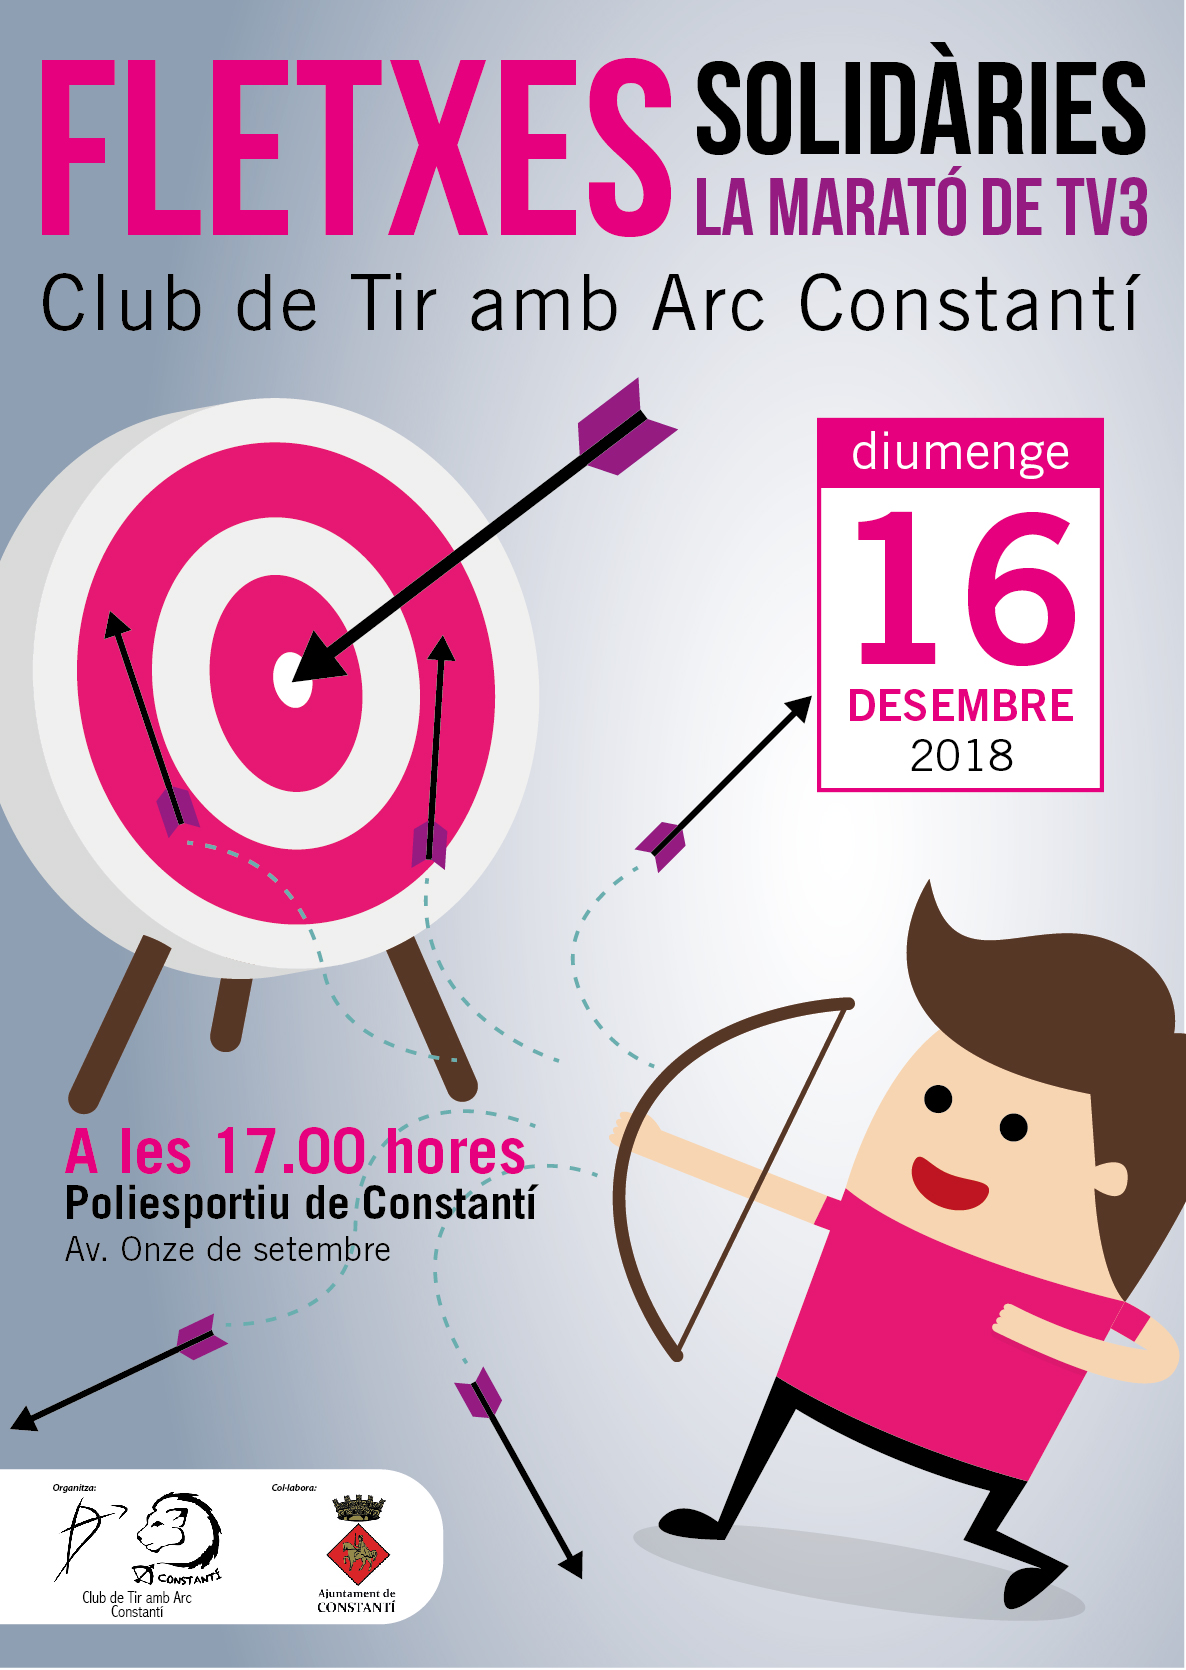 El Club de Tir amb Arc Constantí promou el projecte “Fletxes solidàries” en col·laboració amb la Marató de TV3